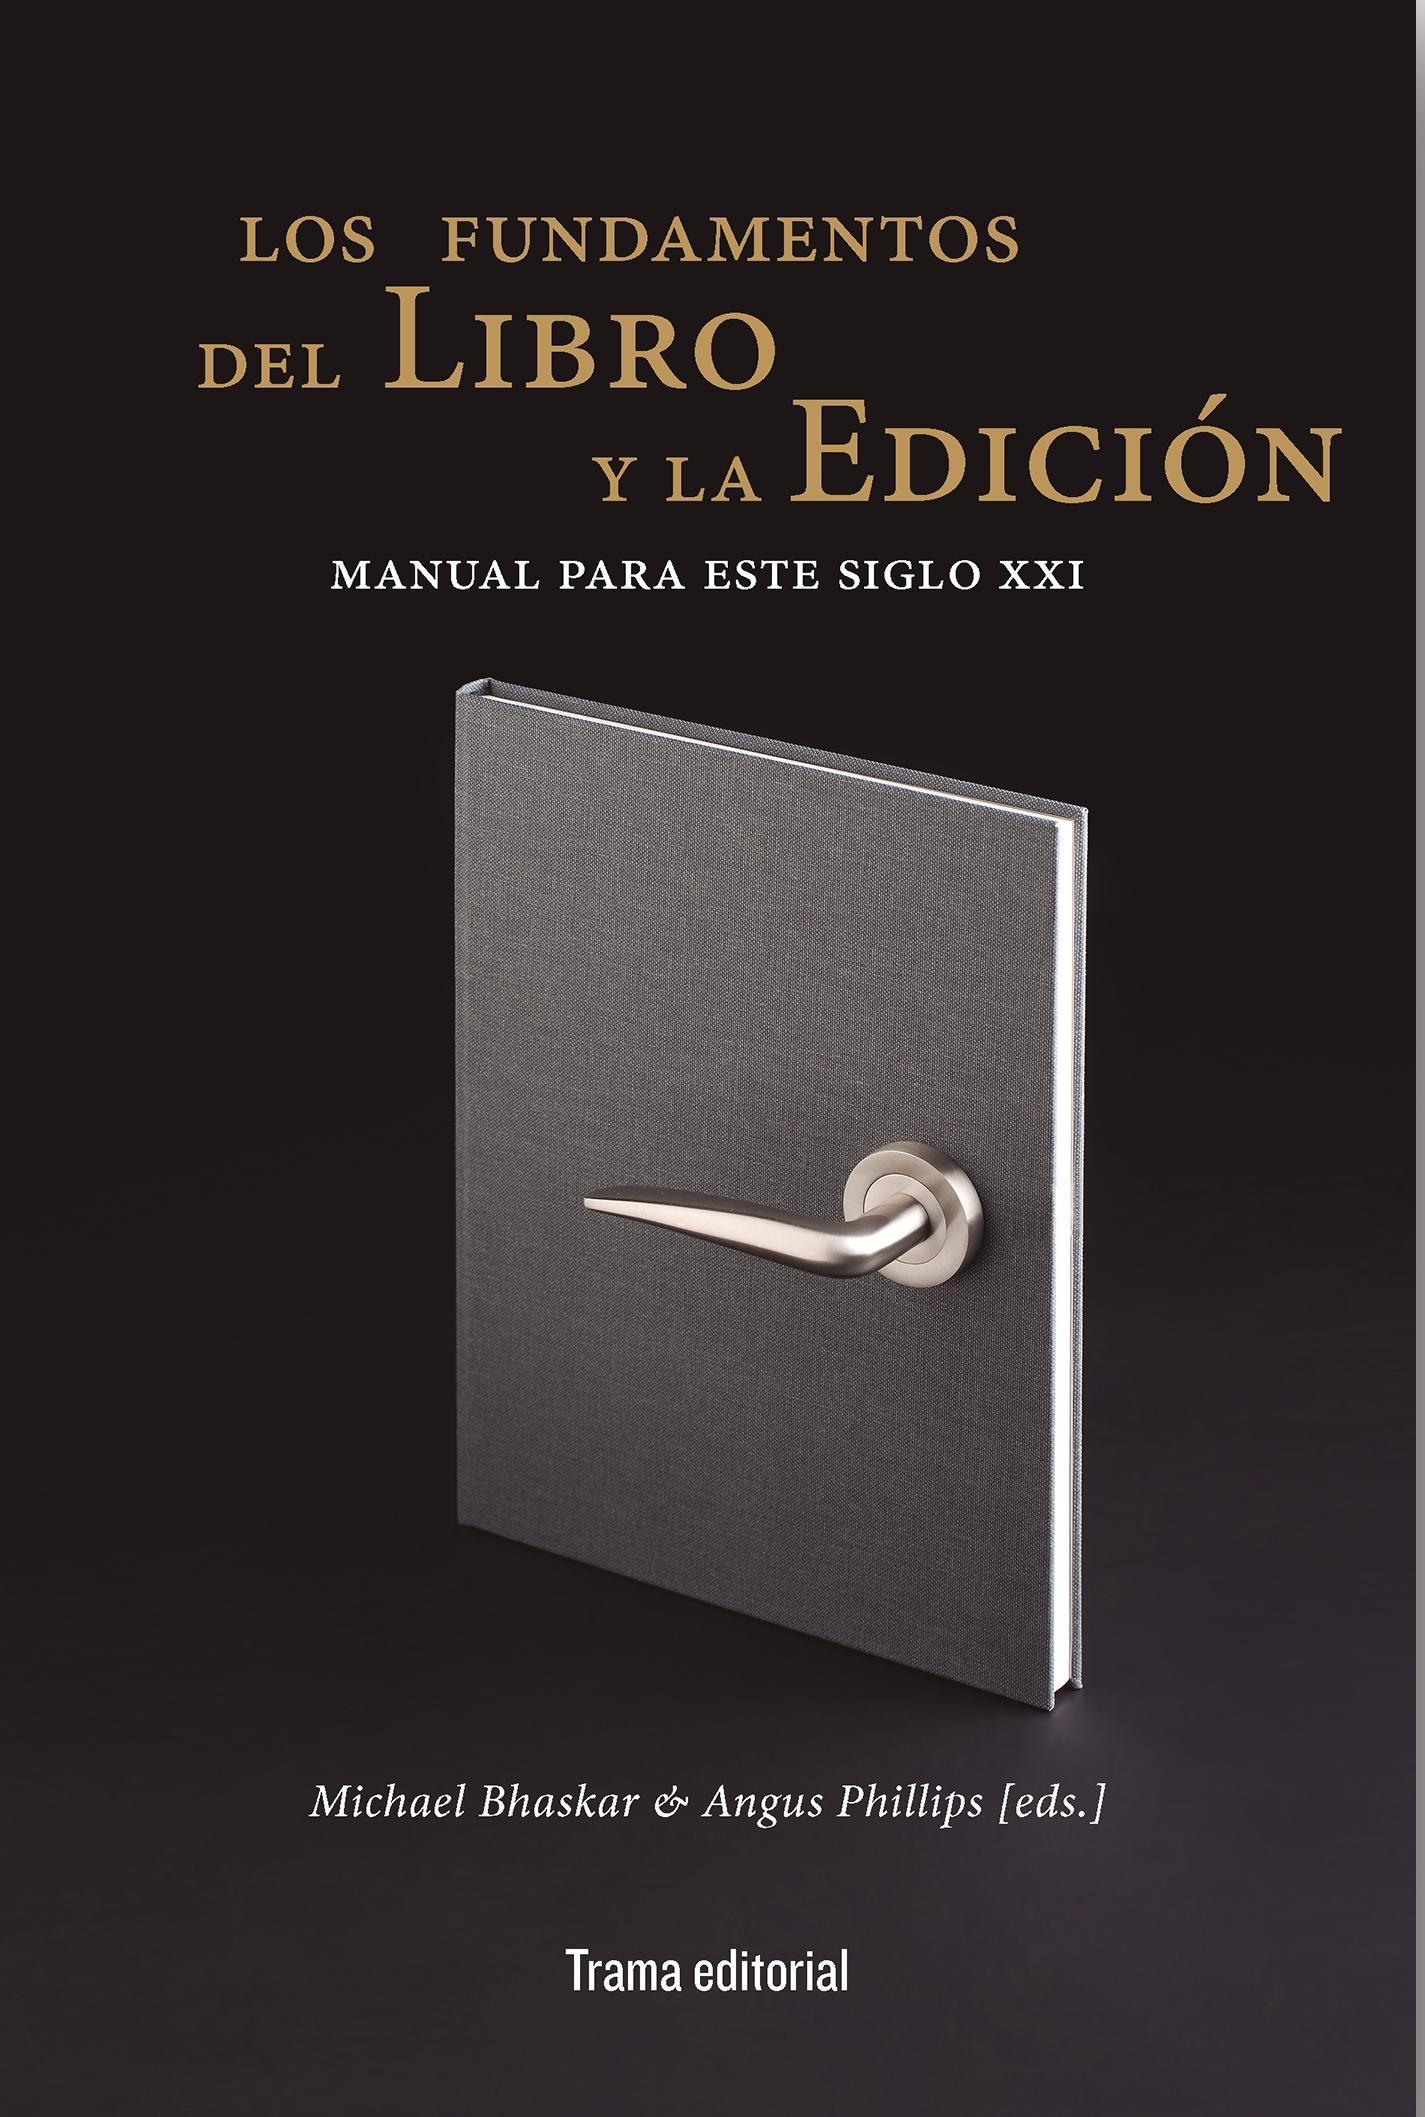 Los fundamentos del libro y la edición "Manual para este siglo XXI". 